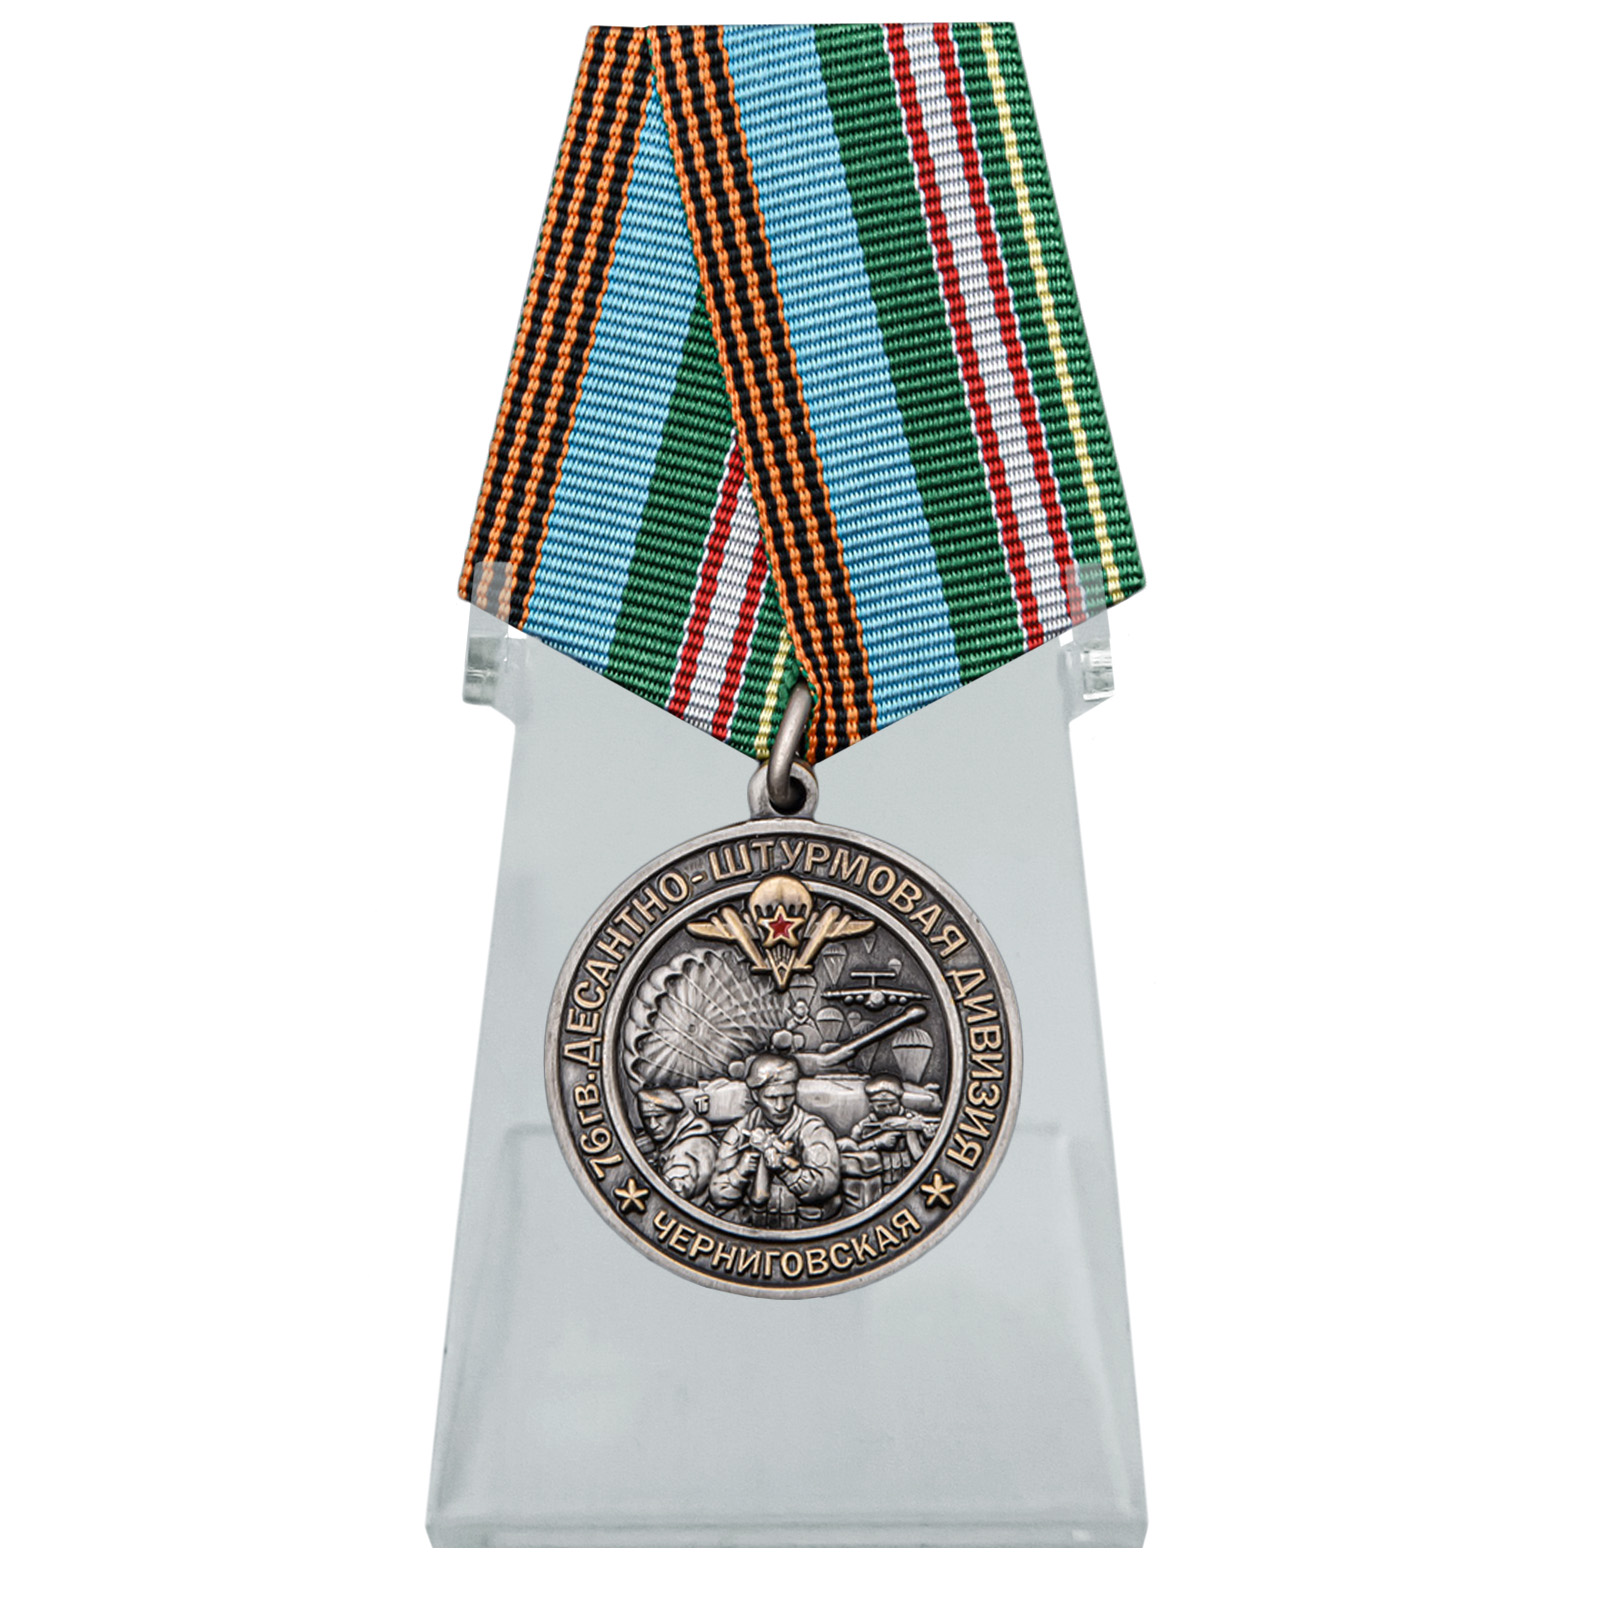 Купить медаль 76-я гв. Десантно-штурмовая дивизия на подставке онлайн